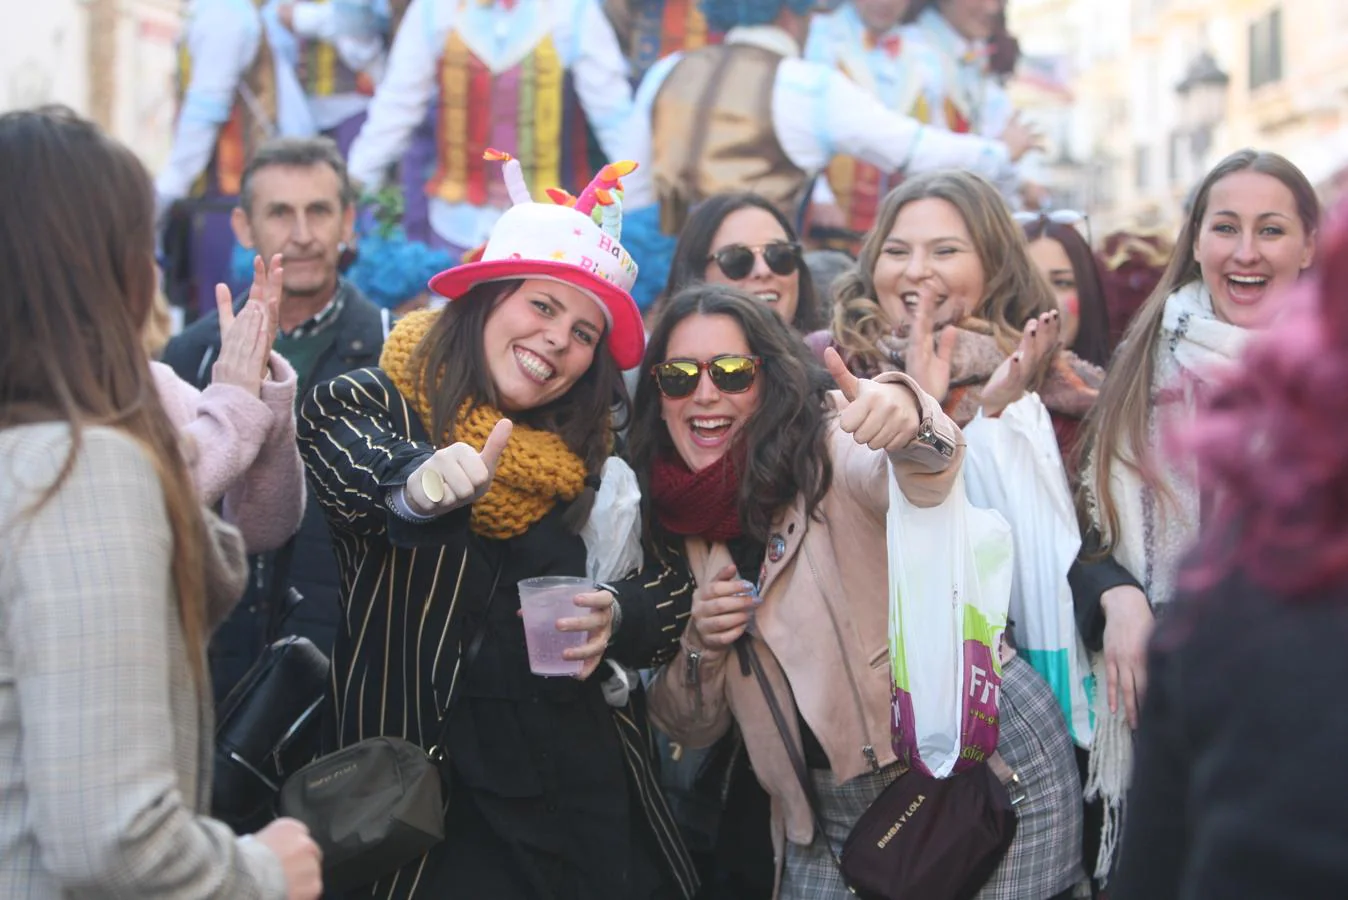 FOTOS: Calles abarrotadas de público en el primer Domingo de Carnaval